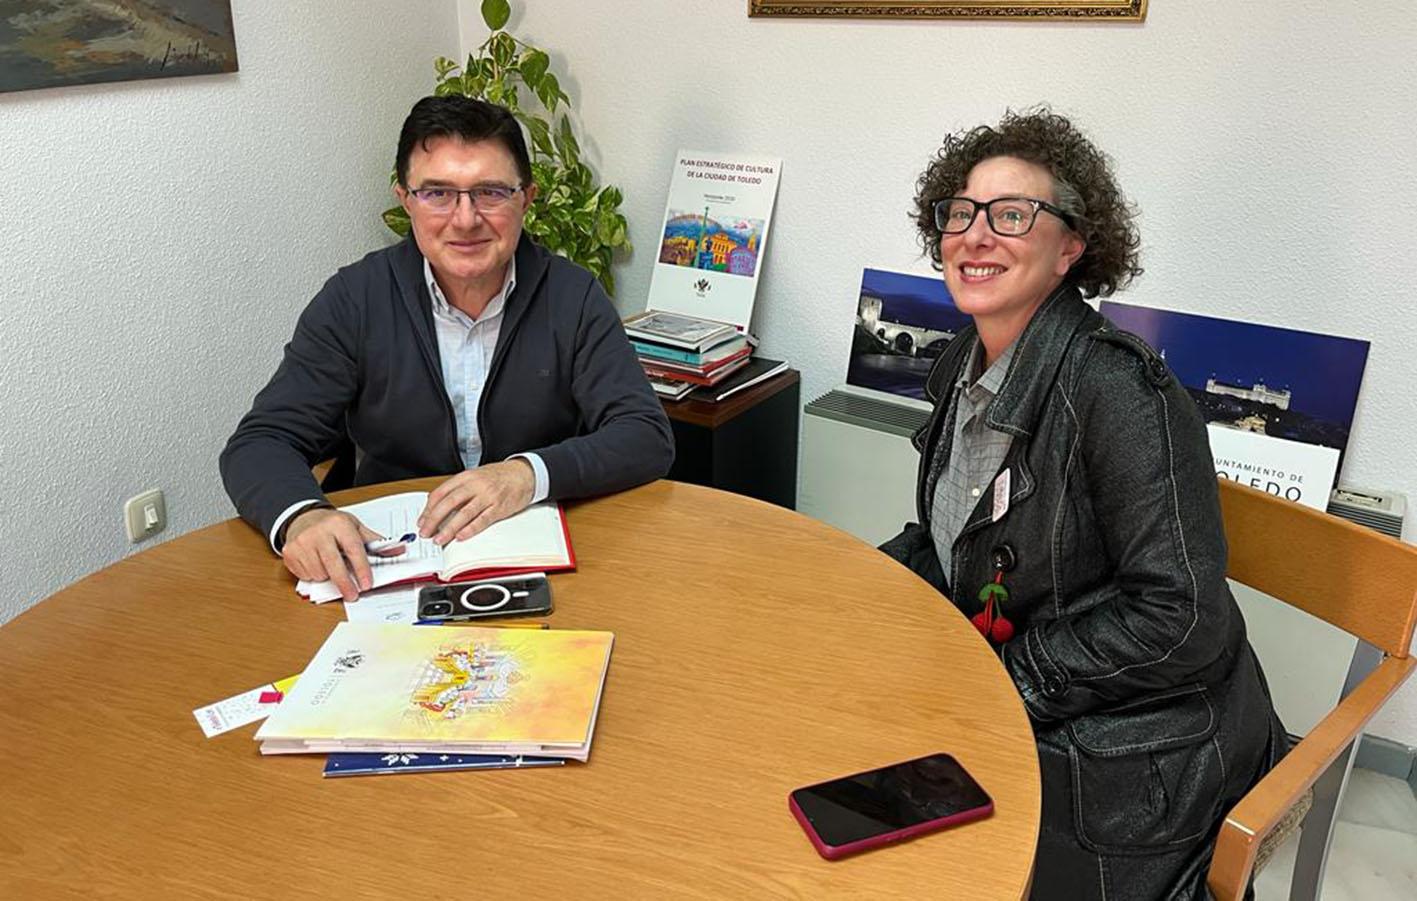 Teo García, concejal de Cultura de Toledo, junto a la coordinadora del Festival Internacional de Poesía Voix Vives, Alicia Es. Martínez.